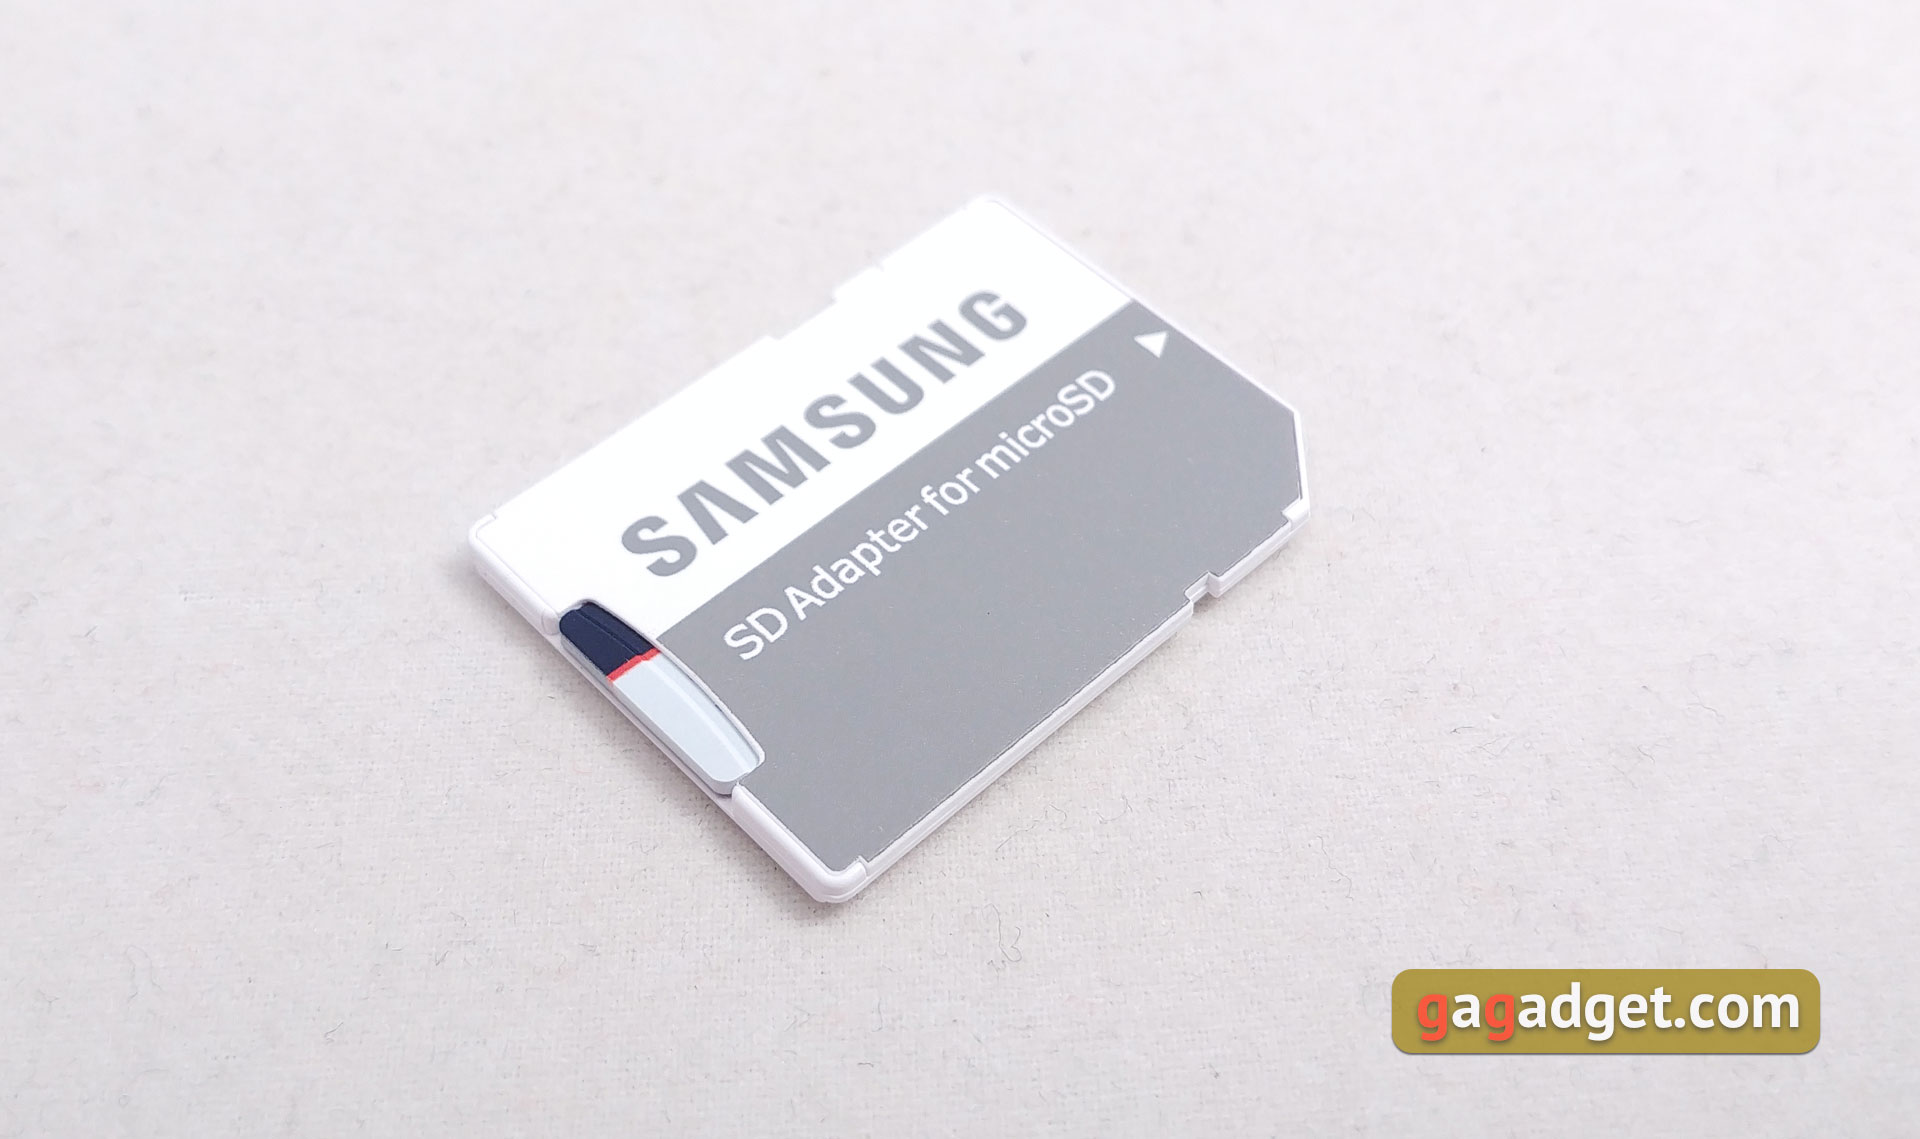 Обзор выносливых MicroSD Samsung PRO Endurance Card и USB-флешки Bar Plus-9